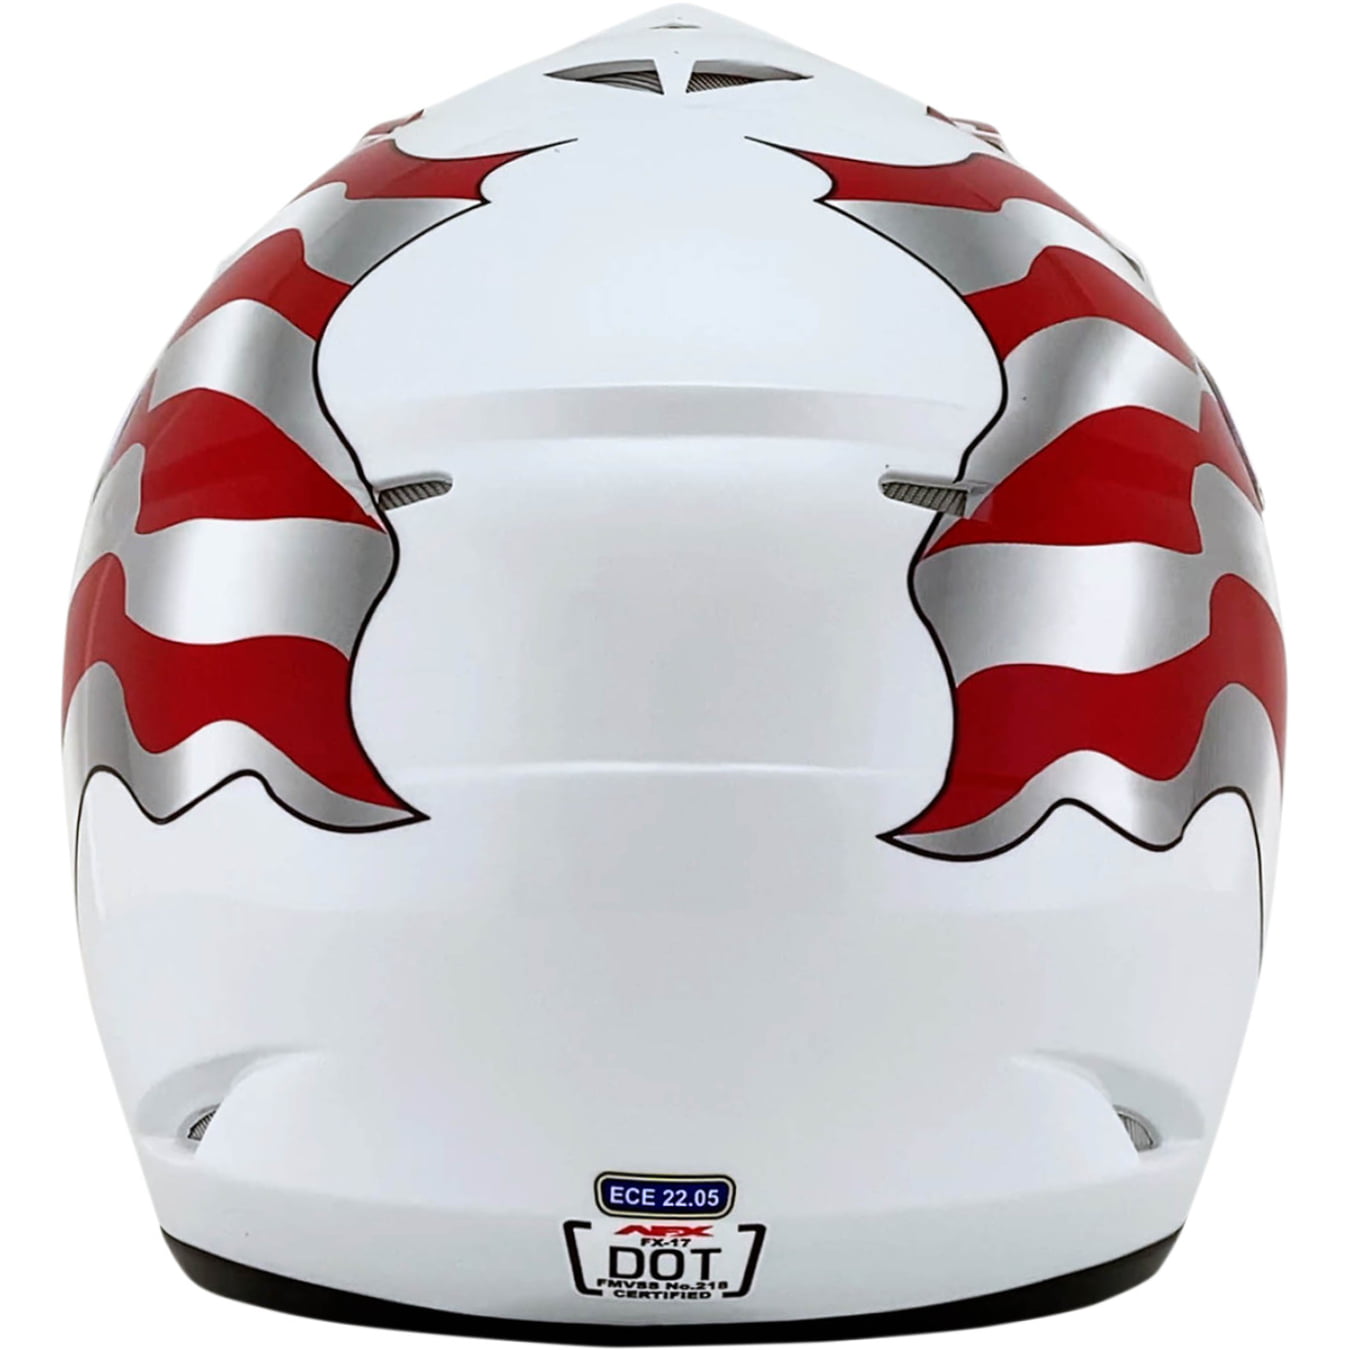 seahawks motorcycle helmet